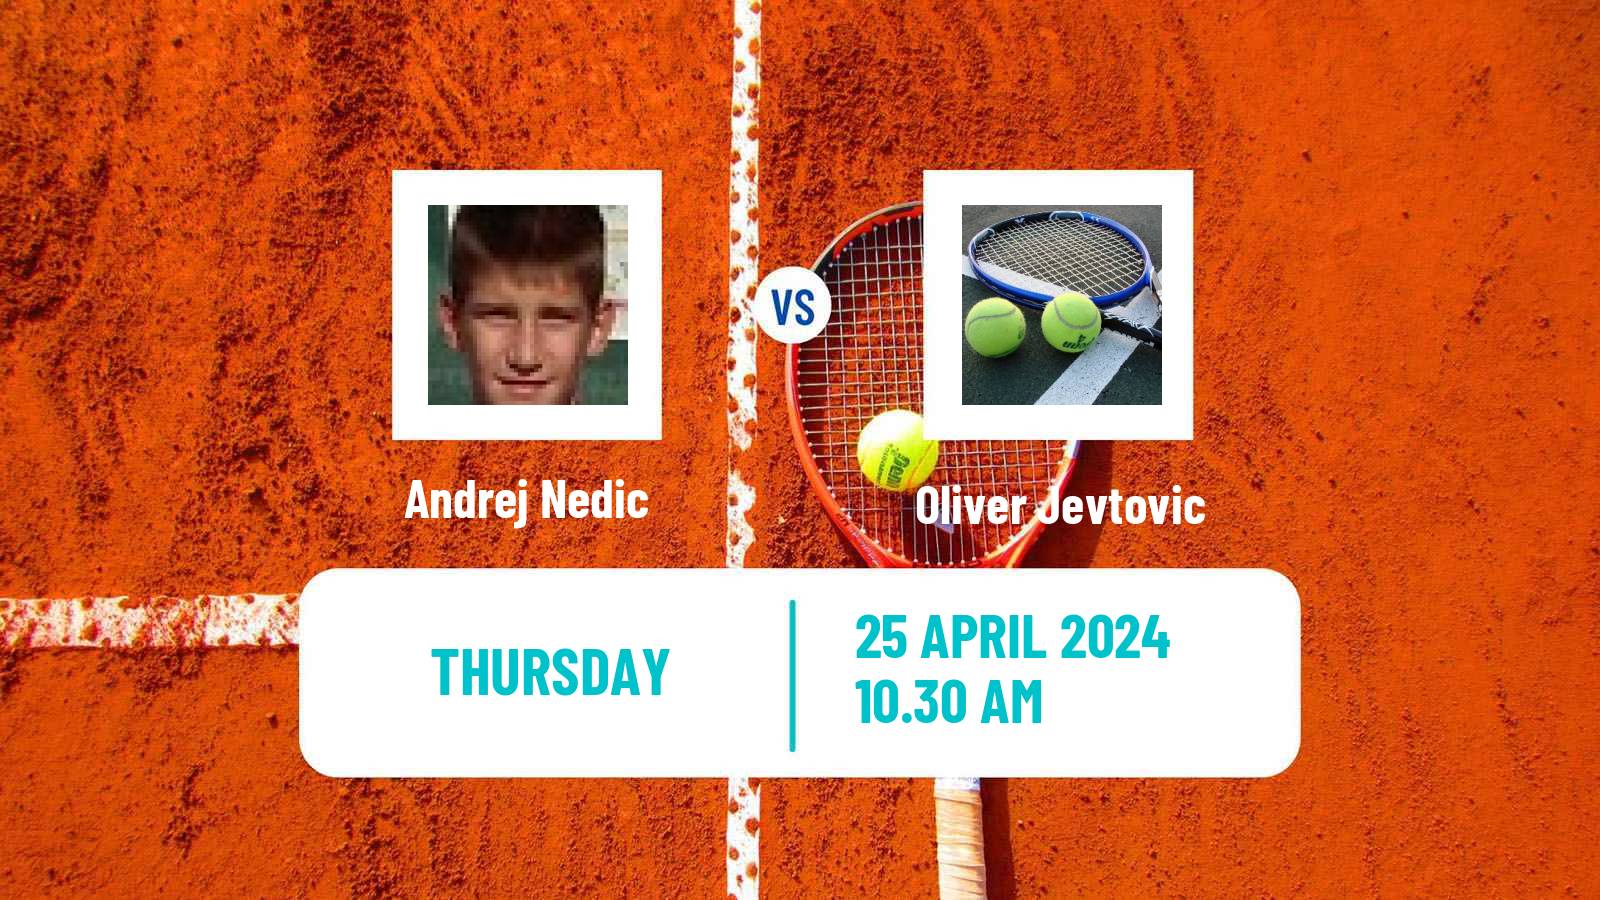 Tennis ITF M15 Kursumlijska Banja 2 Men Andrej Nedic - Oliver Jevtovic